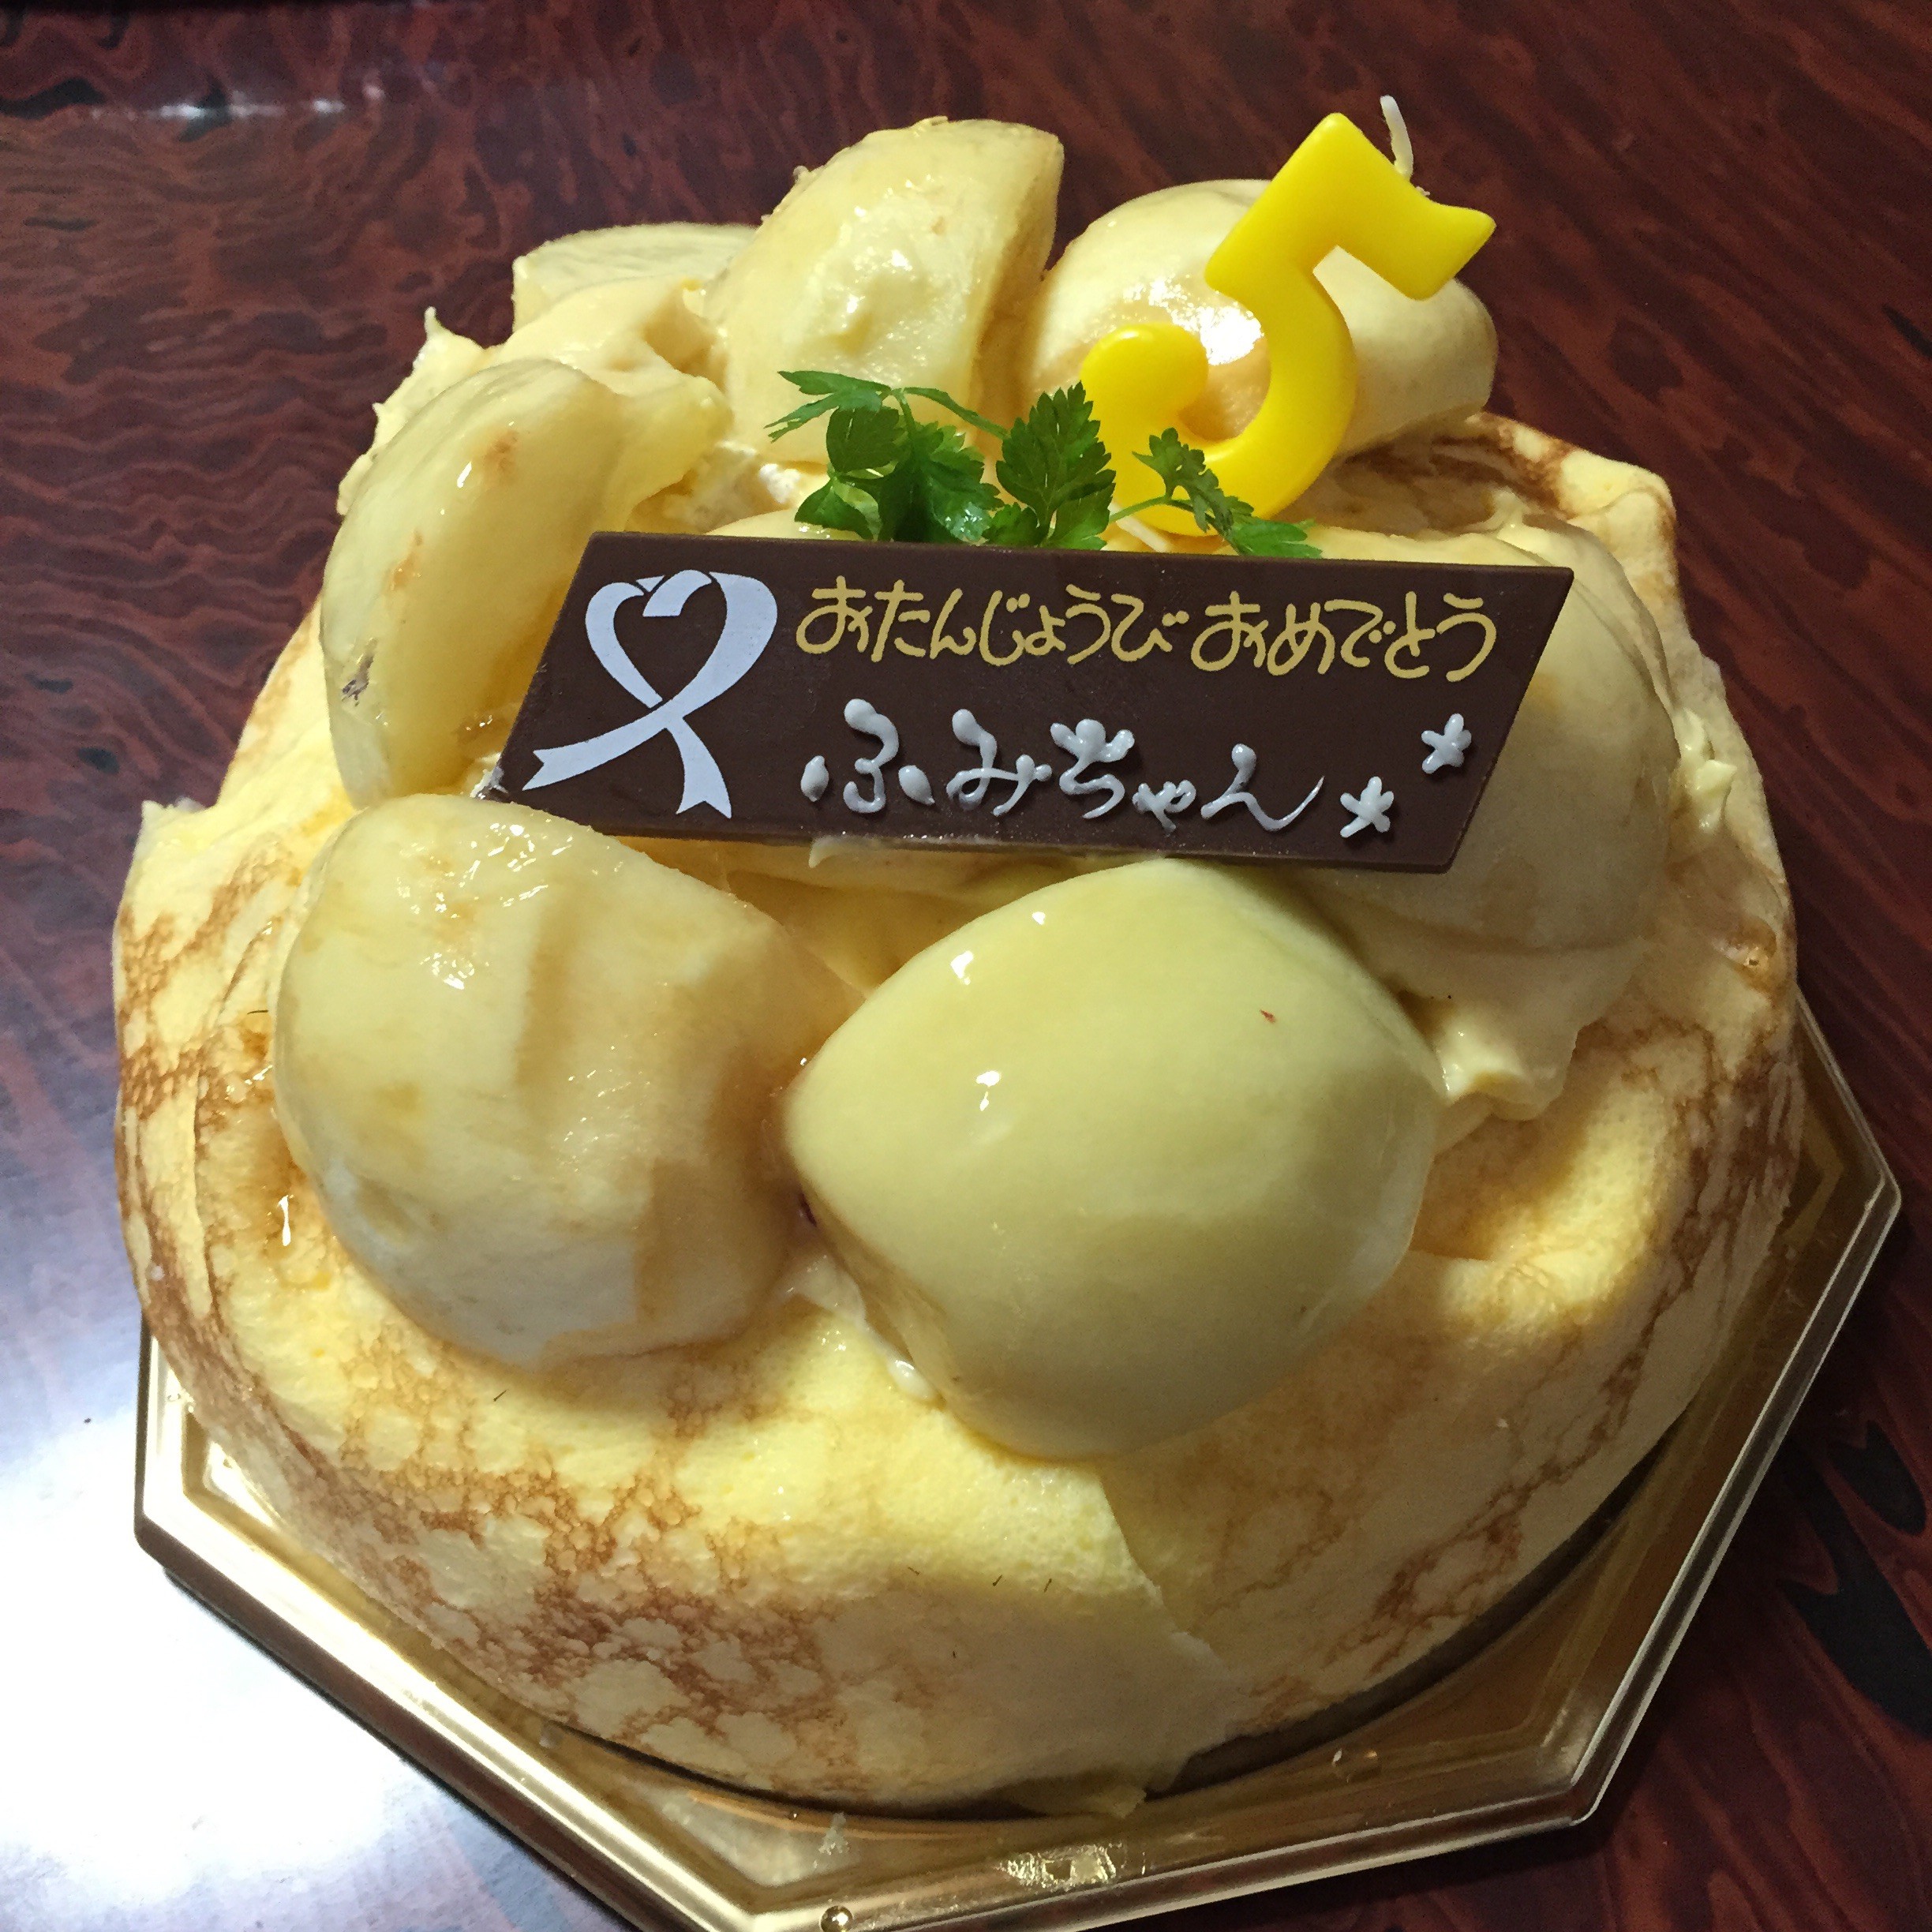 バースデーケーキにオススメ Usunagaさんの季節限定品はホールケーキも凄かった 滋賀のママがイベント 育児 遊び 学びを発信 シガマンマ ピースマム